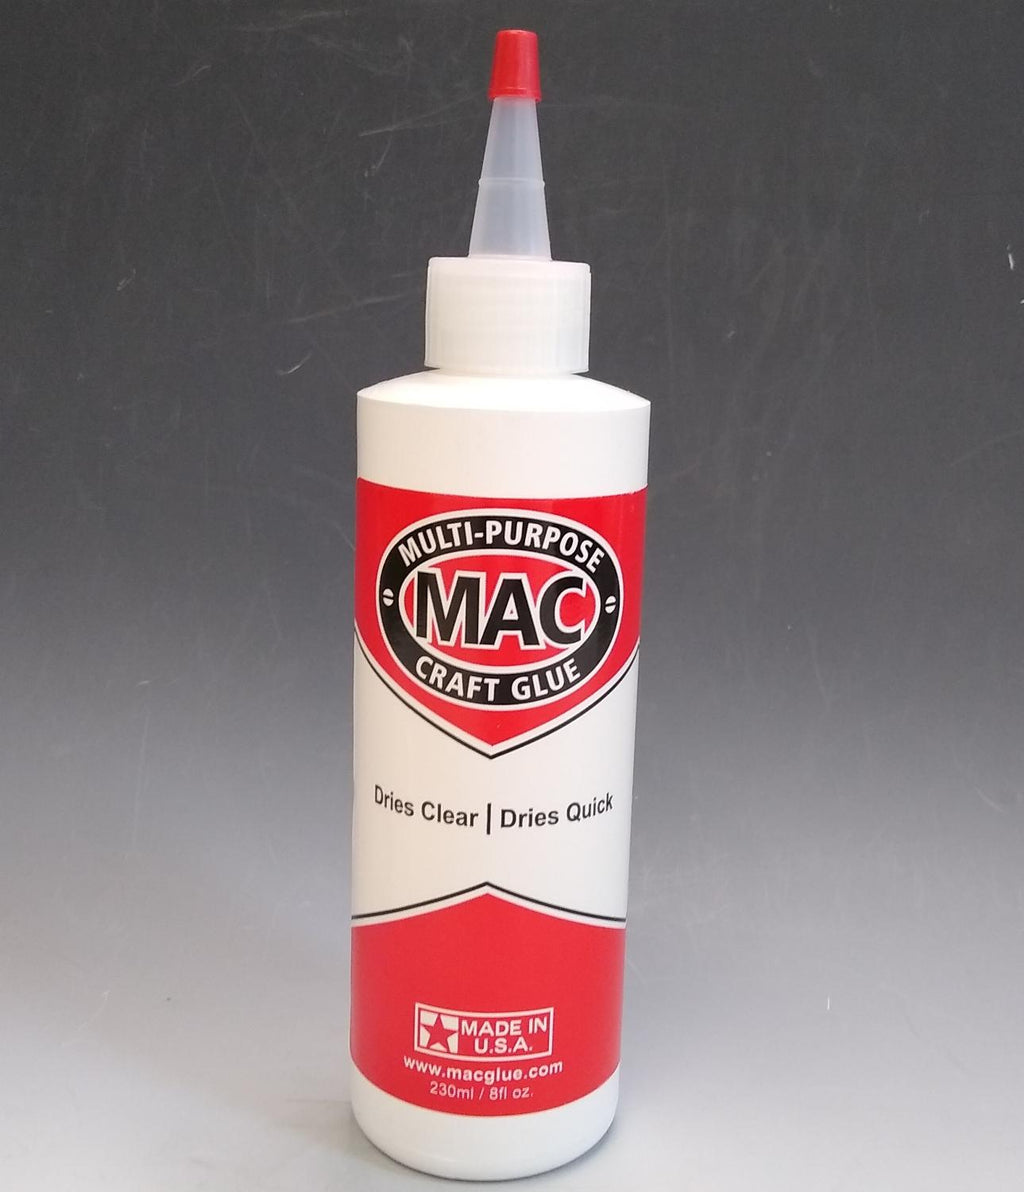 Mac Extra Clear Glue 8oz